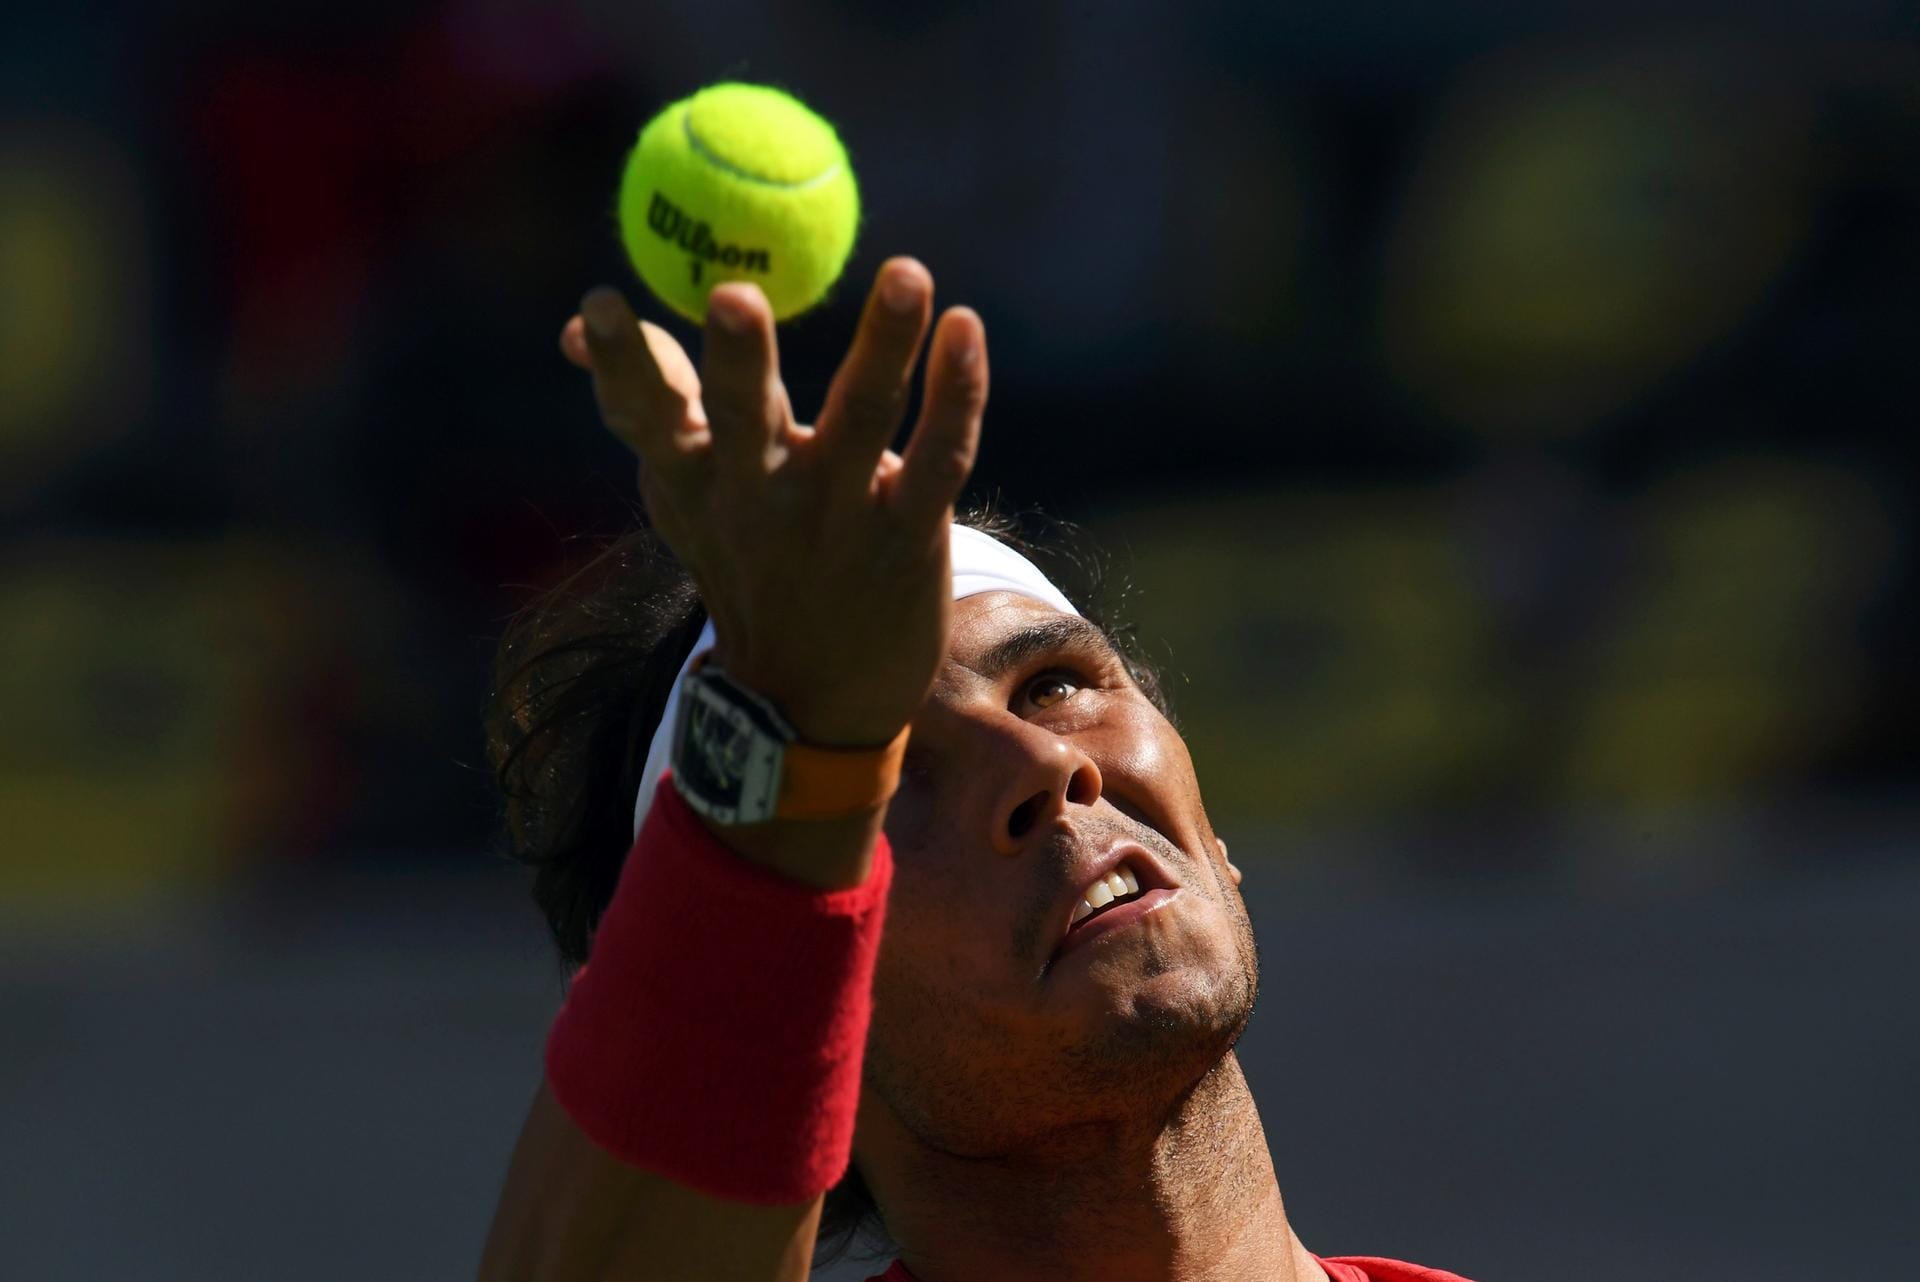 Und was Ma Long beim Tischtennis macht, zeigt der spanische Tennis-Star Rafael Nadal bei seinem Match gegen den Franzosen Gilles Simon. Immer schön das Spielgerät im Auge behalten...